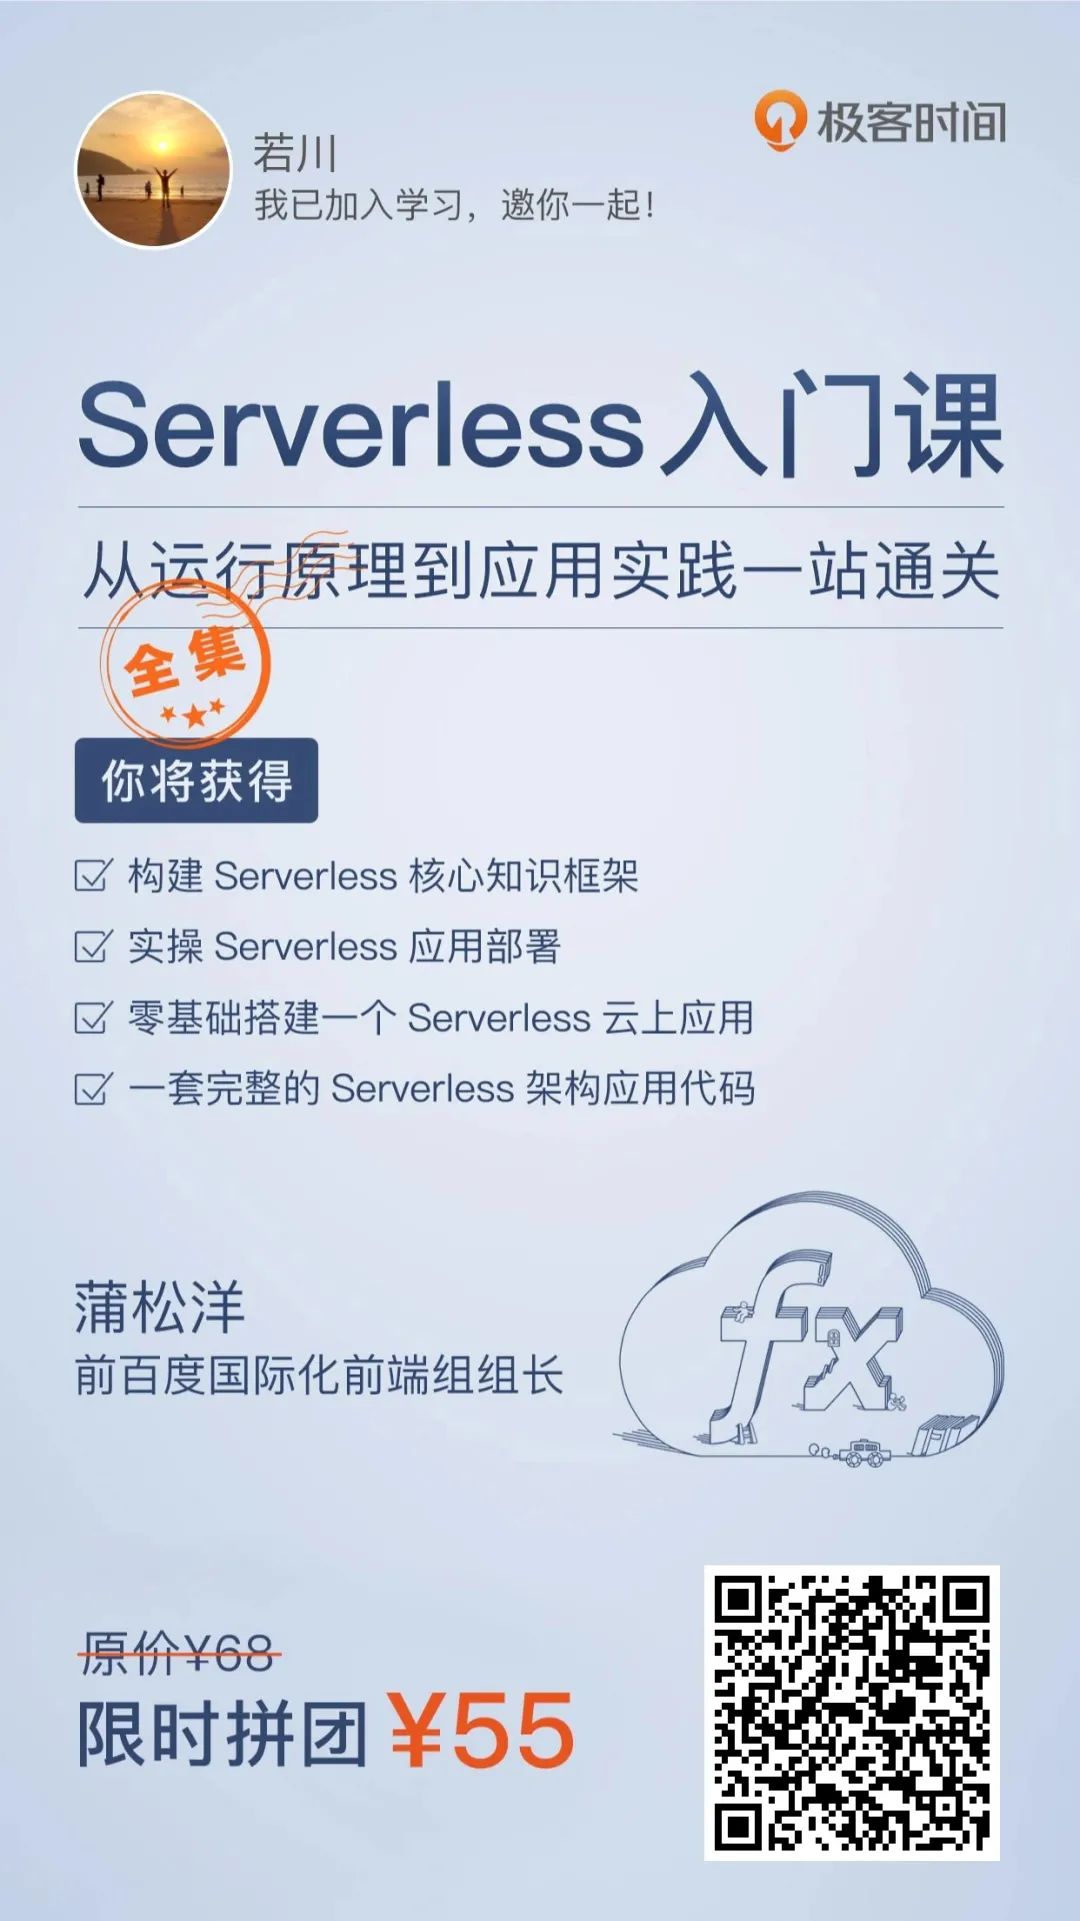 Serverless 究竟是什么？